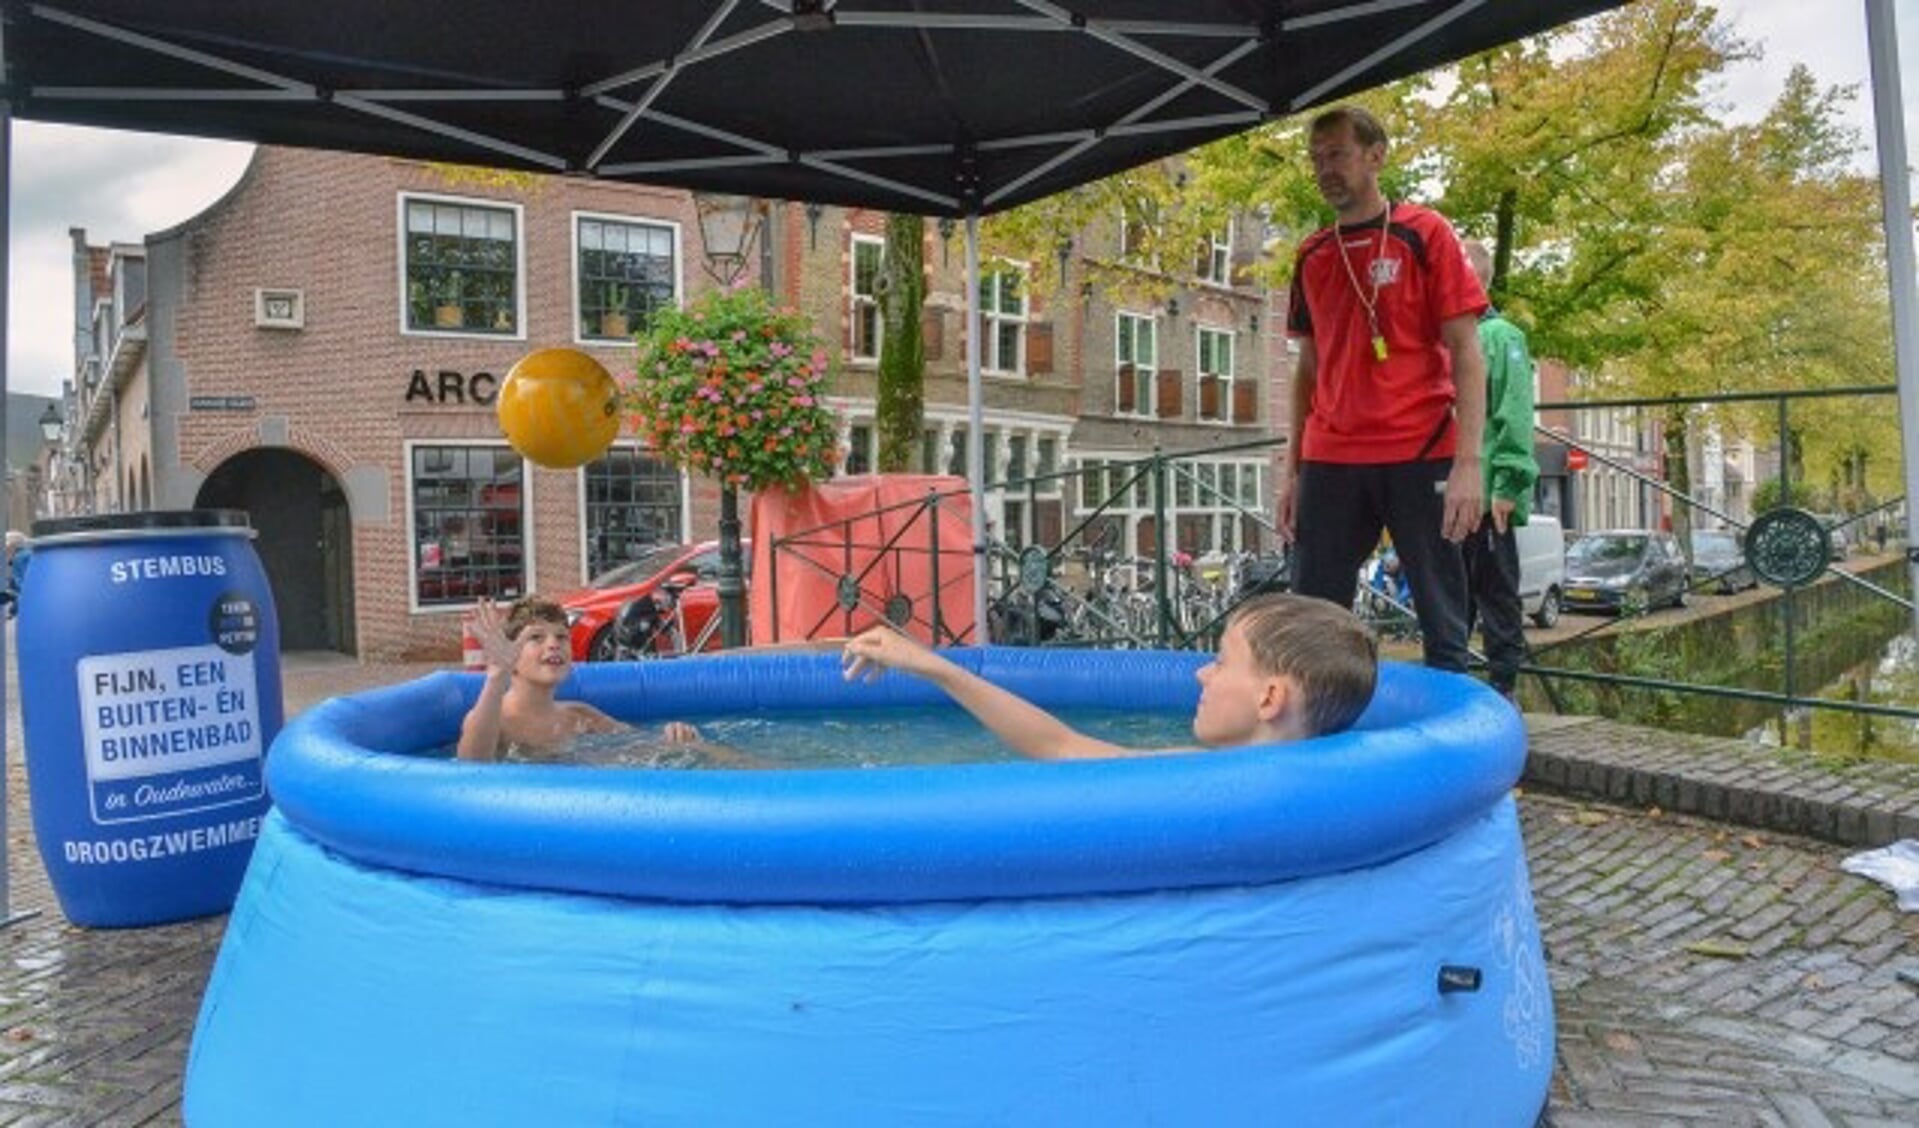 De eerste ludieke actie van de Oudewaterse Zwem Vereniging (OZV) voor een binnen- en buitenbad in Oudewater. 